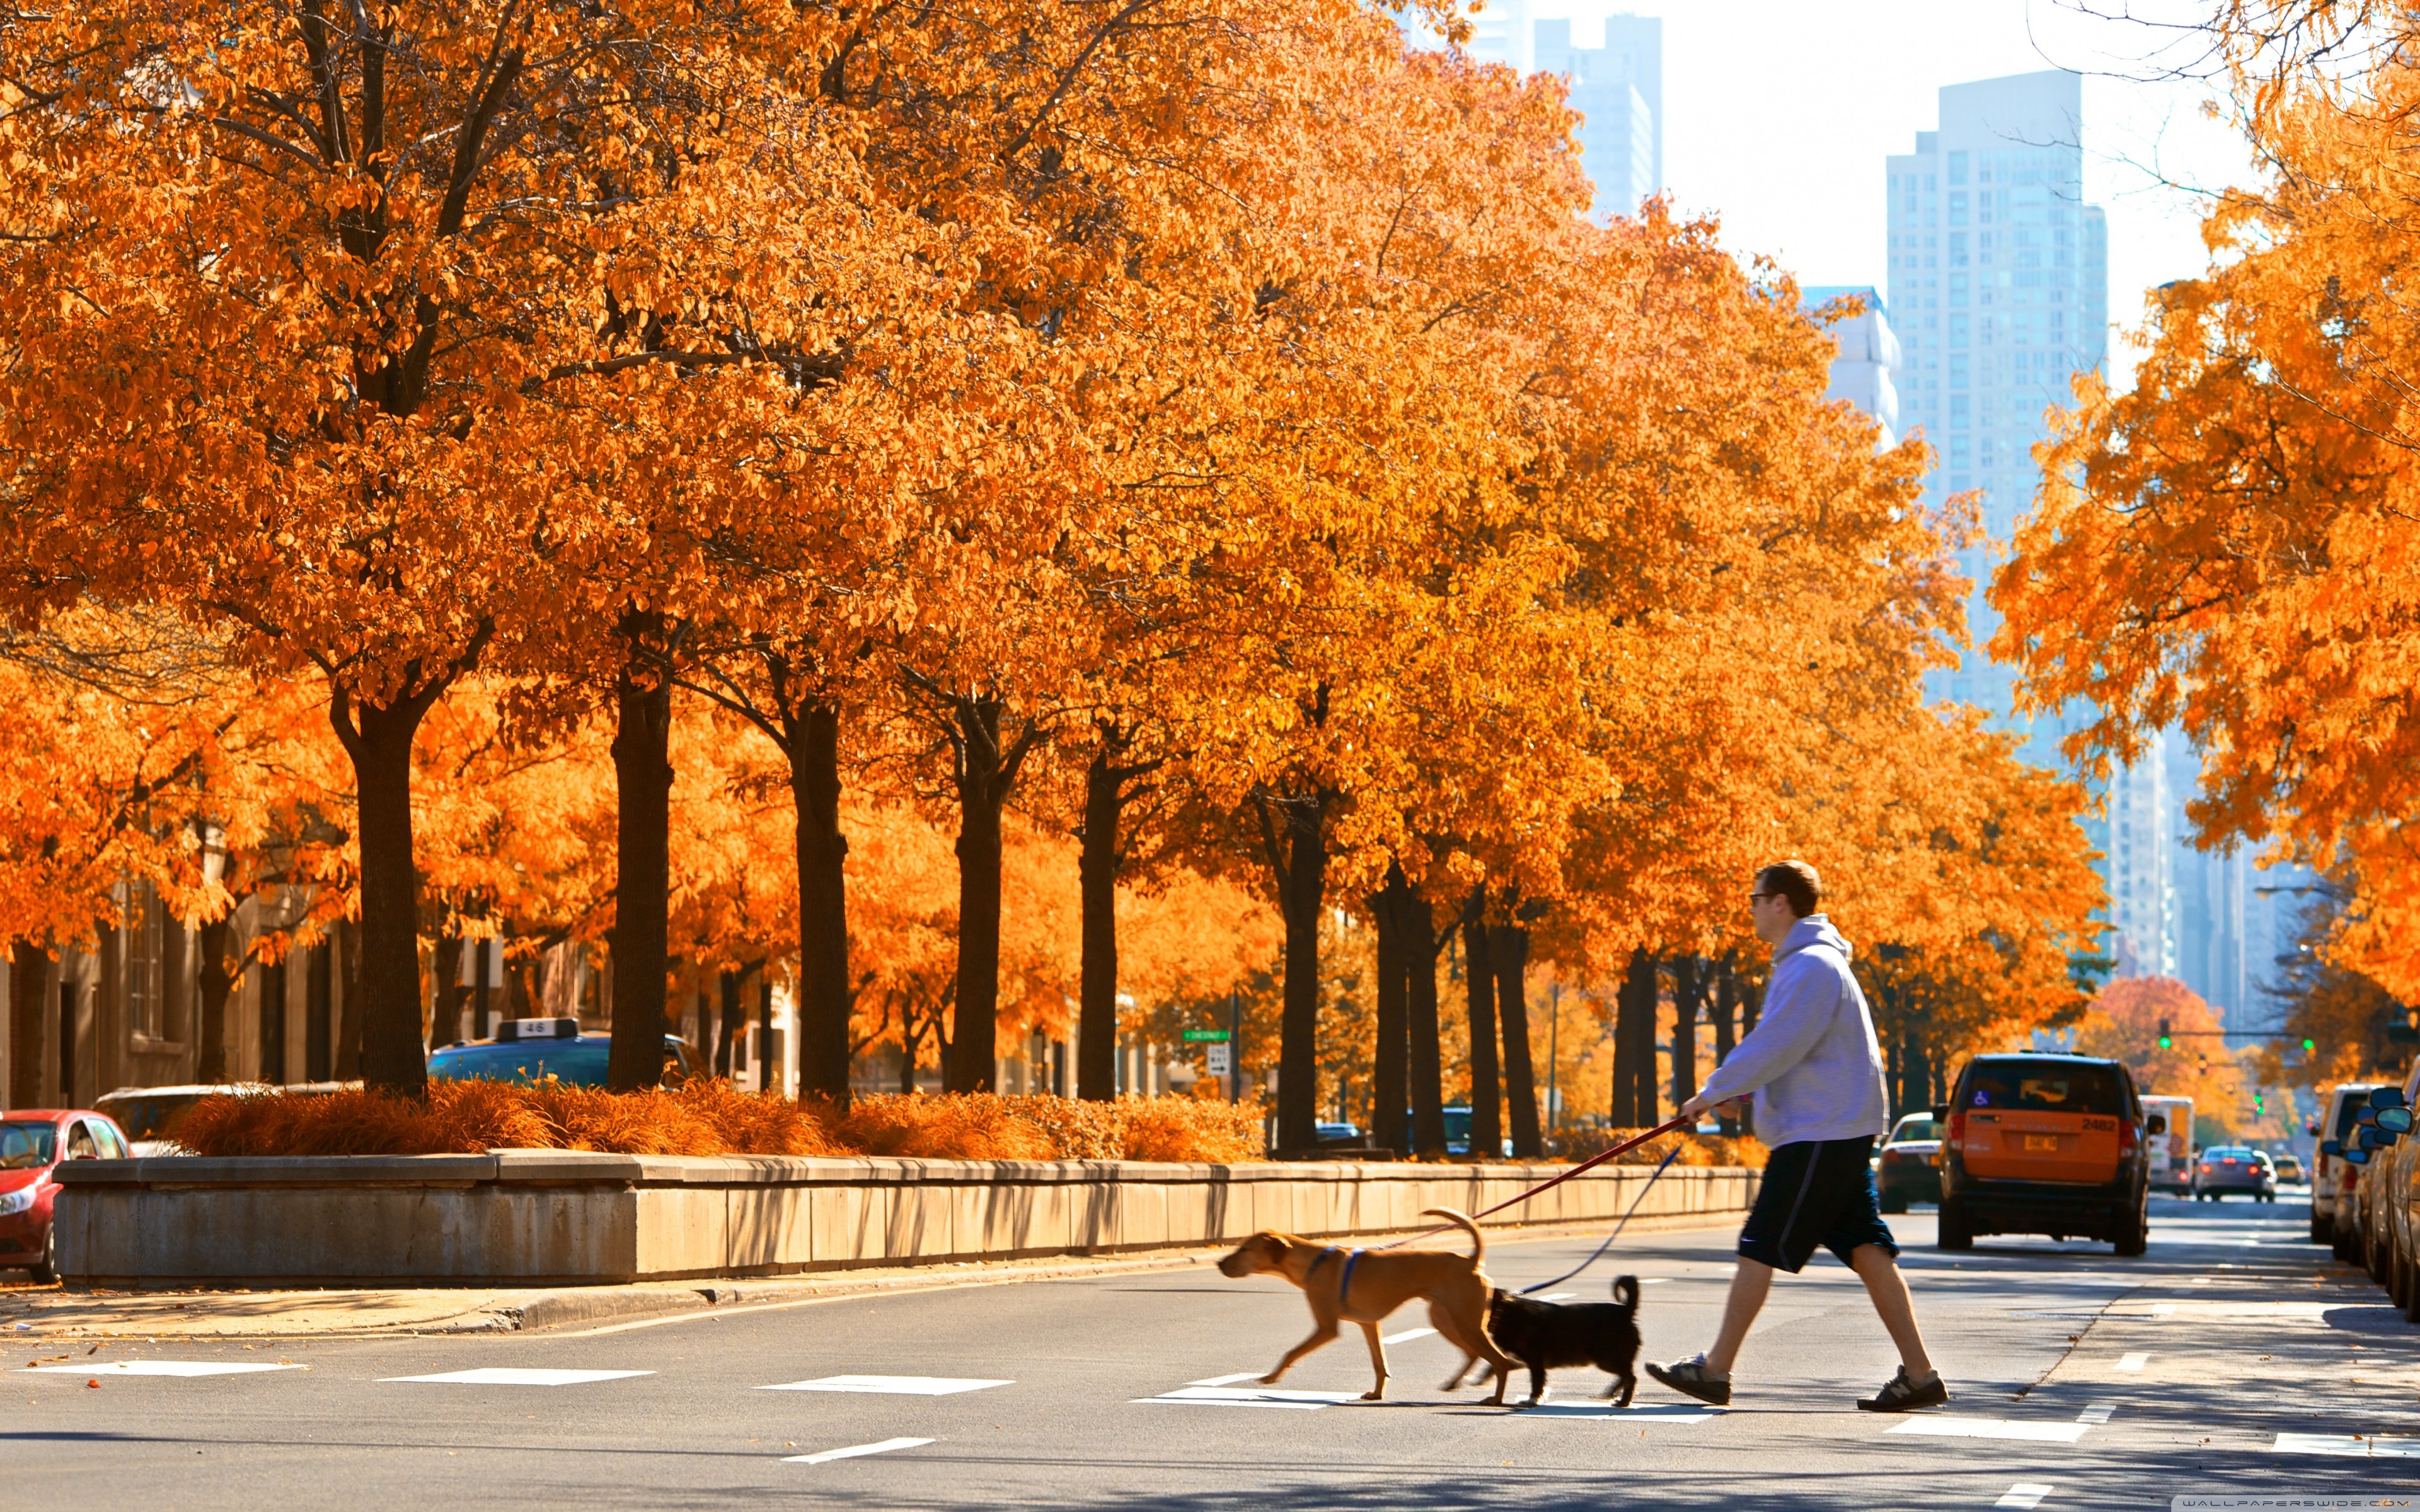 Какая теплая осень в этом году. Центр парк Нью-Йорк. Осень в Нью-Йорке» (autumn in New York), 2000. Осень в городе. Осенний город.